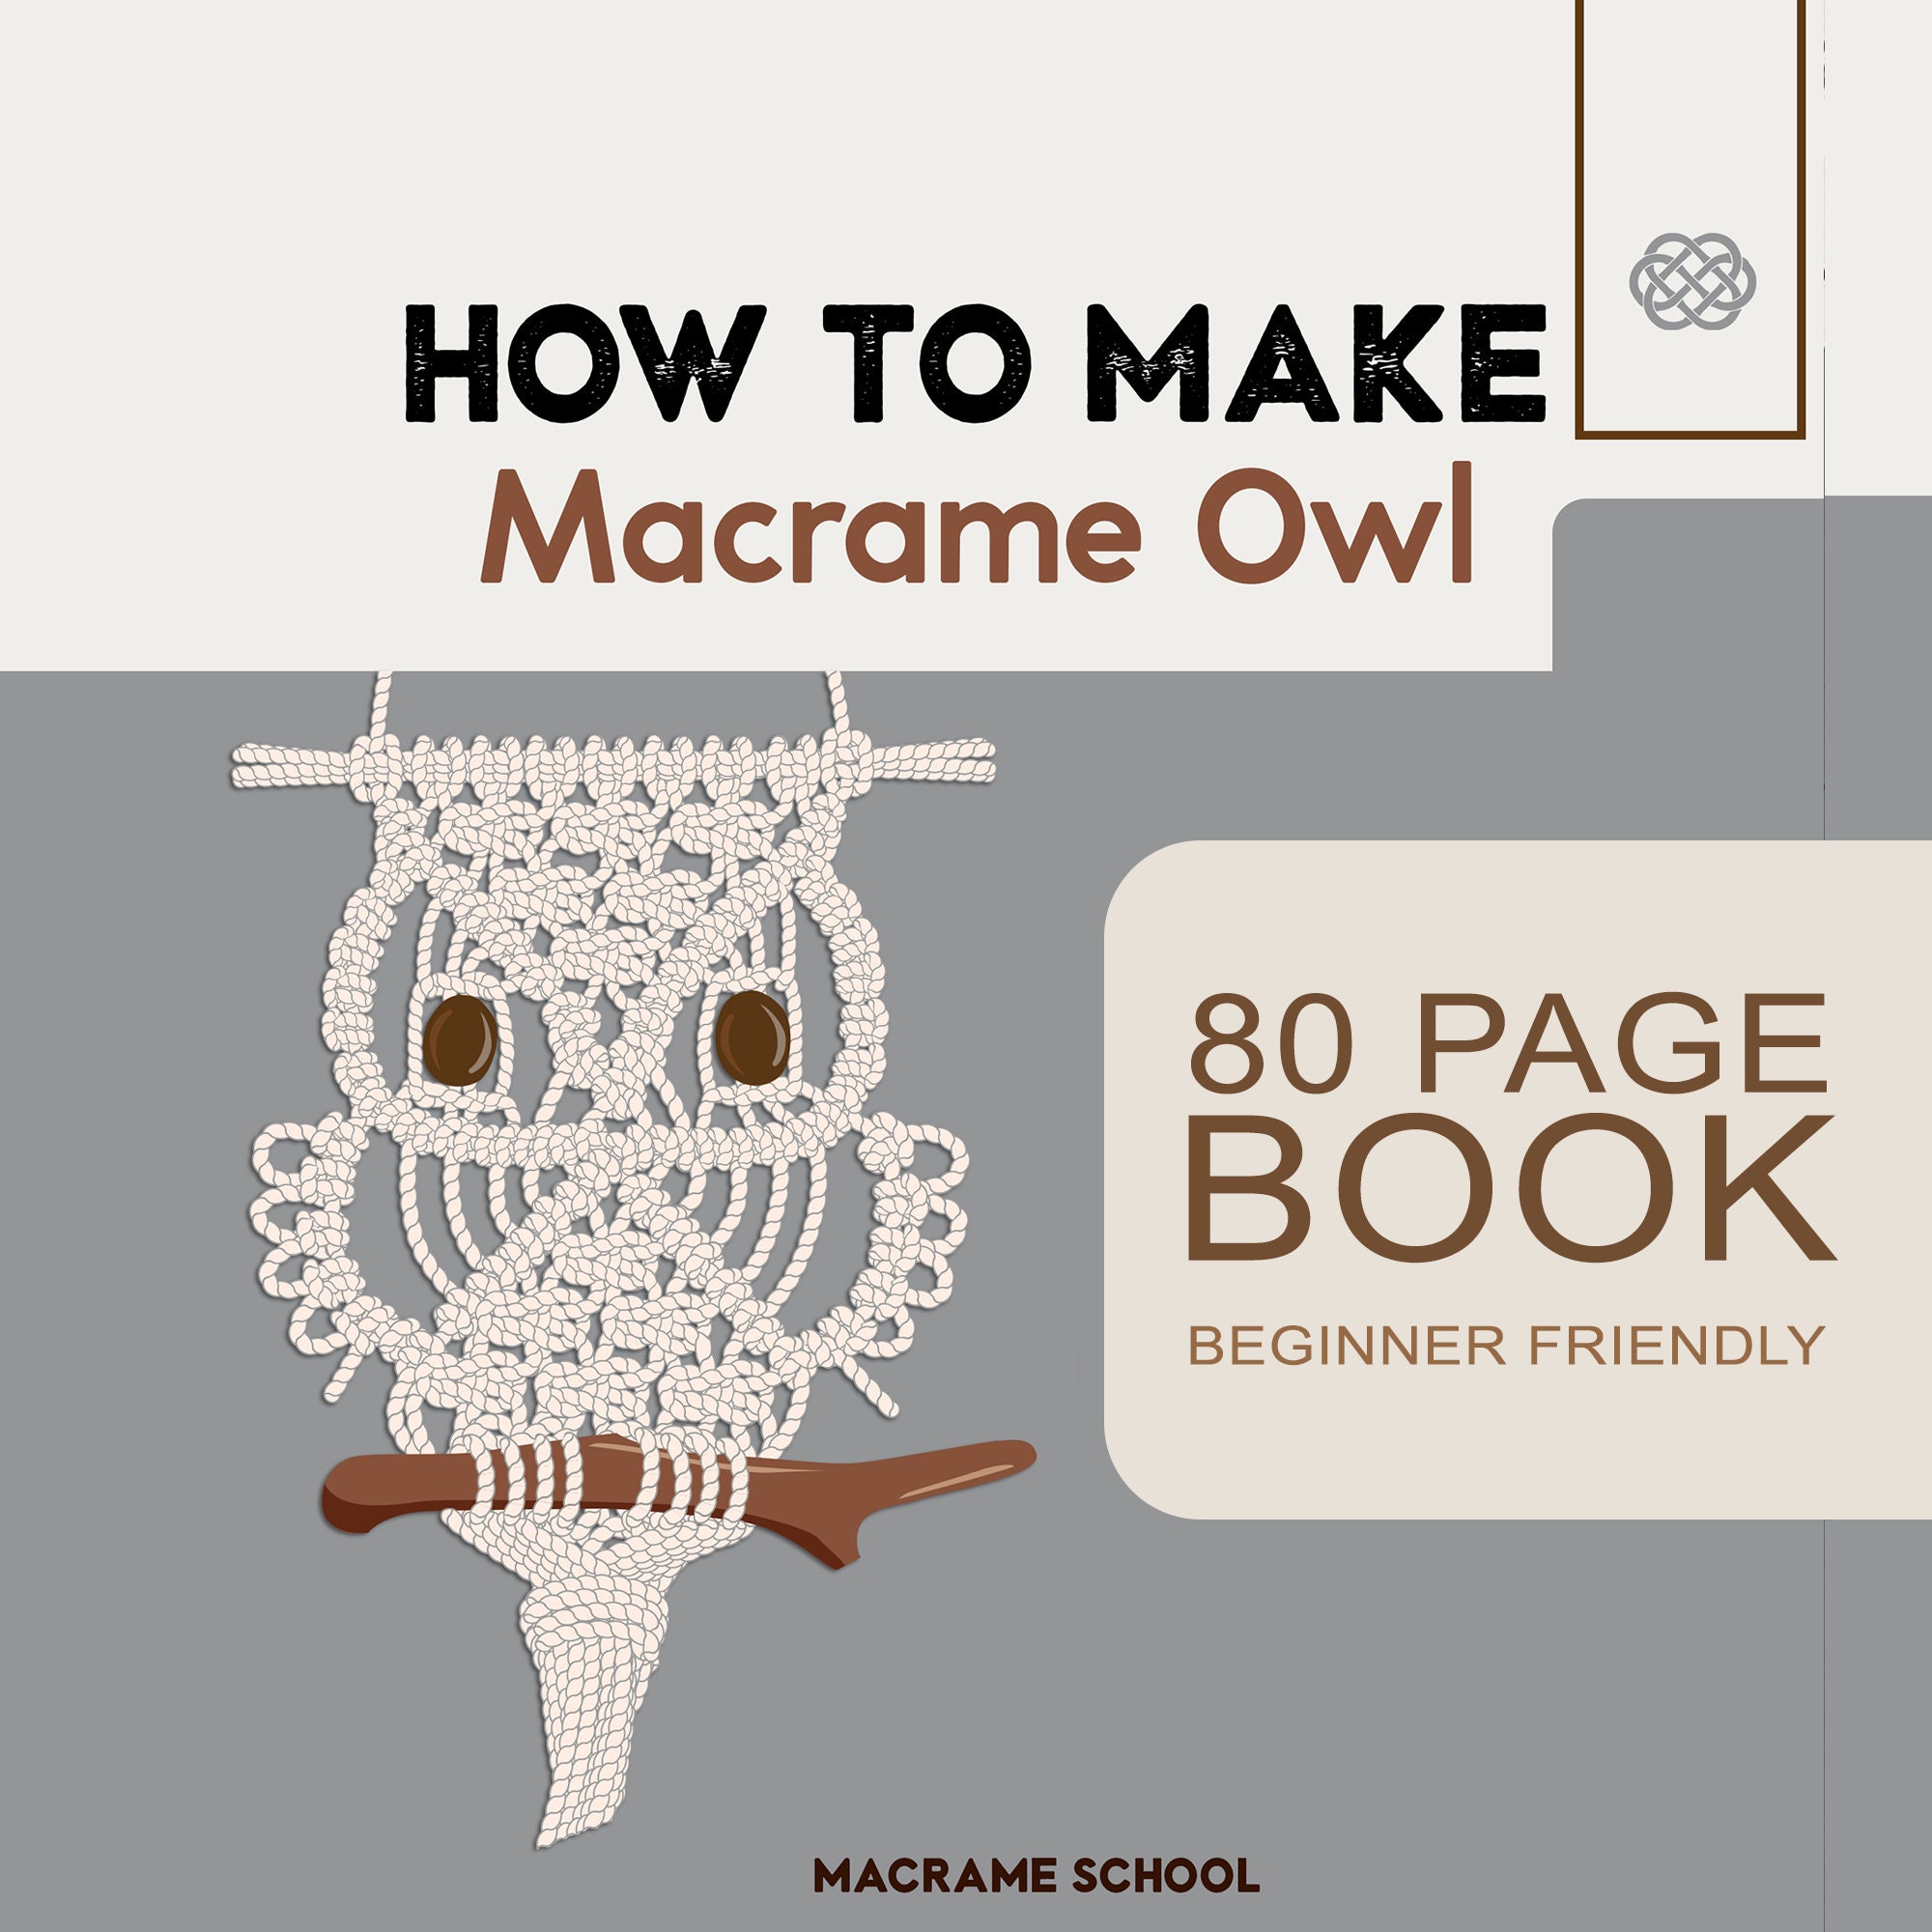 Beginner Macrame Knots: A Tutorial E-Book